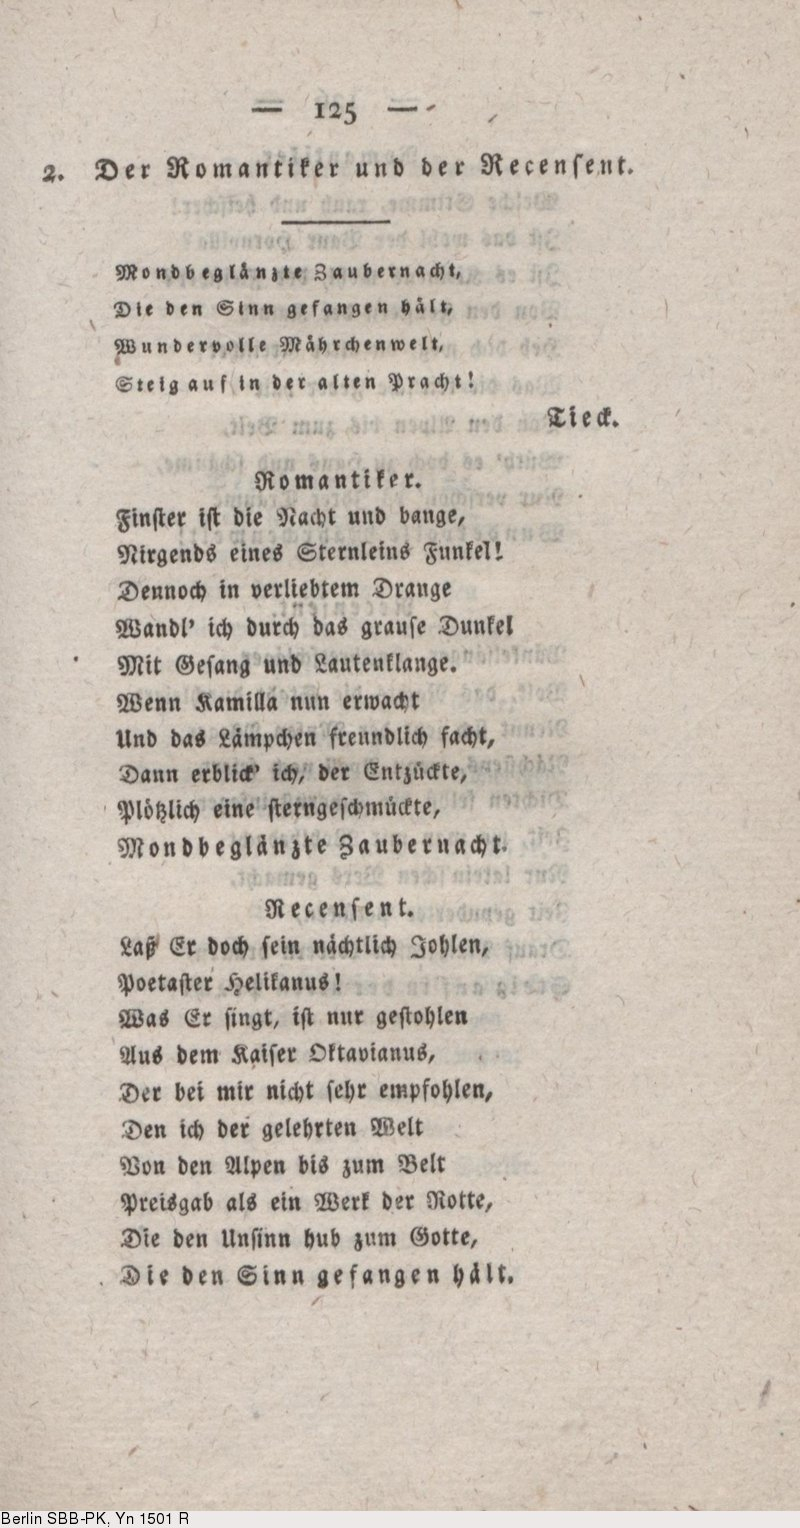 Deutsches Textarchiv – Uhland, Ludwig: Gedichte. Stuttgart ganzes Mondbeglänzte Zaubernacht Die Den Sinn Gefangen Hält